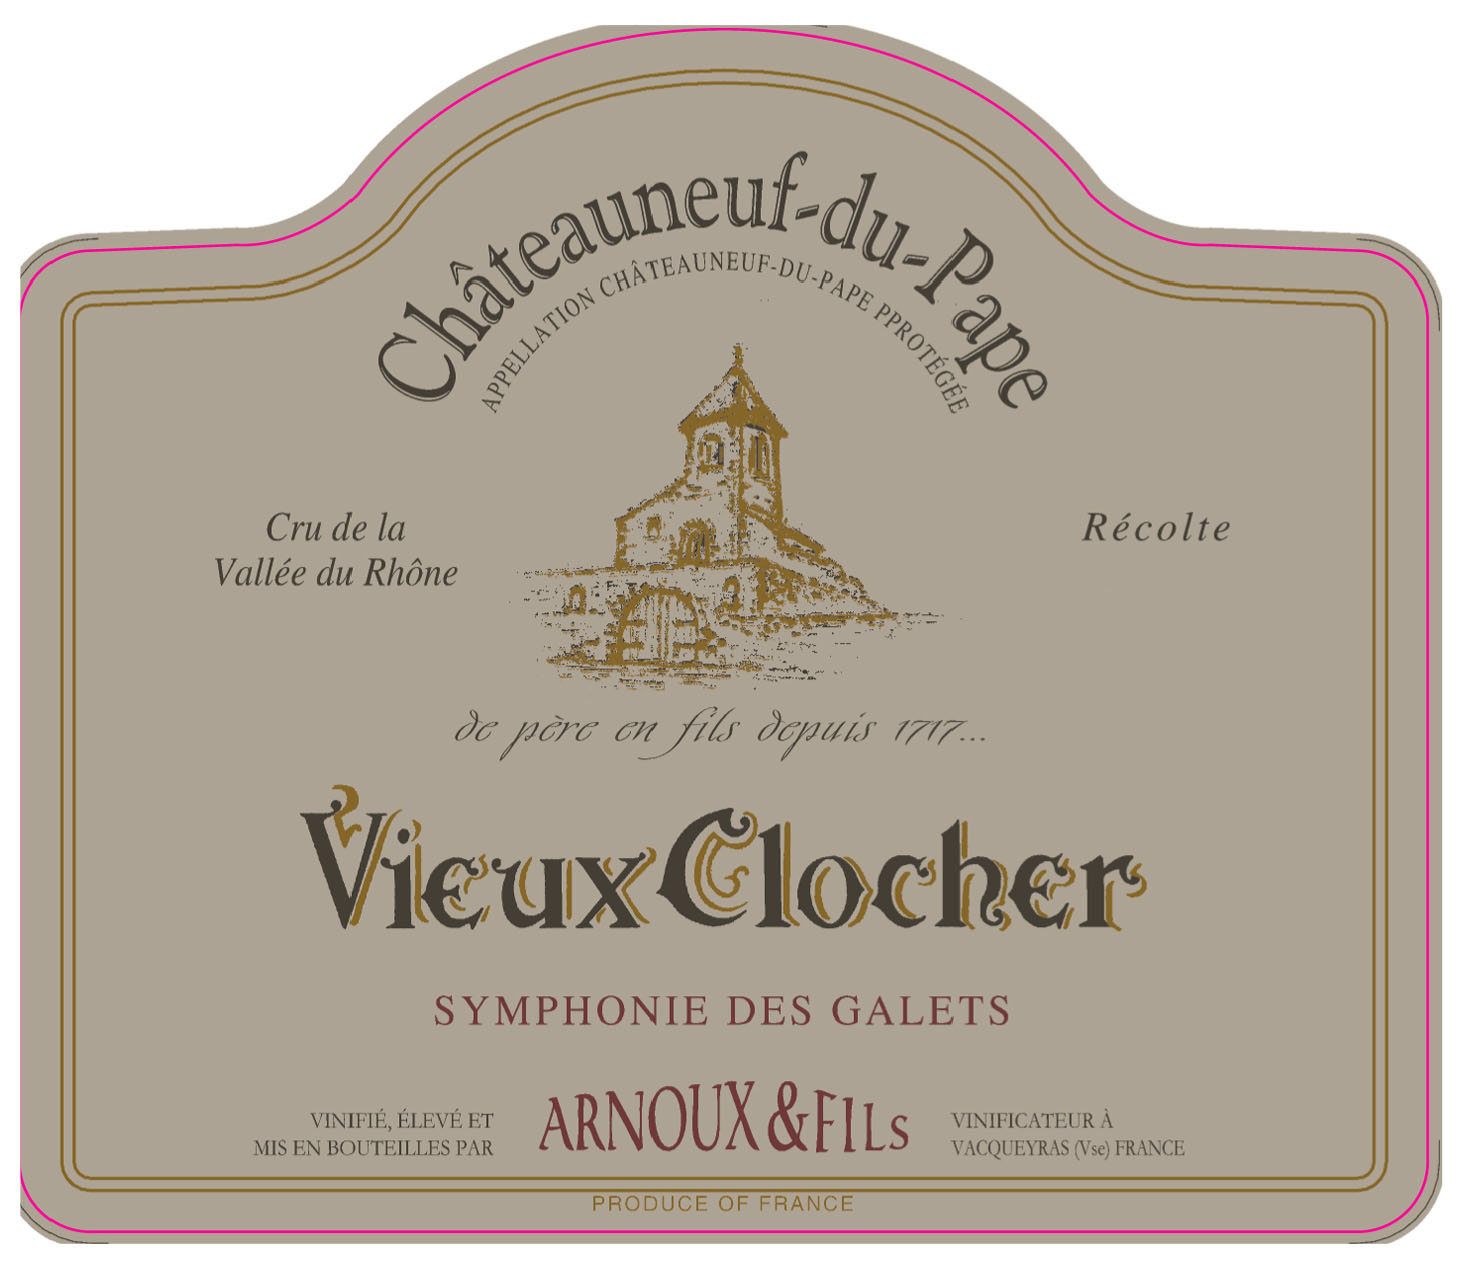 Arnoux & Fils - Vieux Clocher - Symphonie Des Galets - Chateauneuf du Pape label